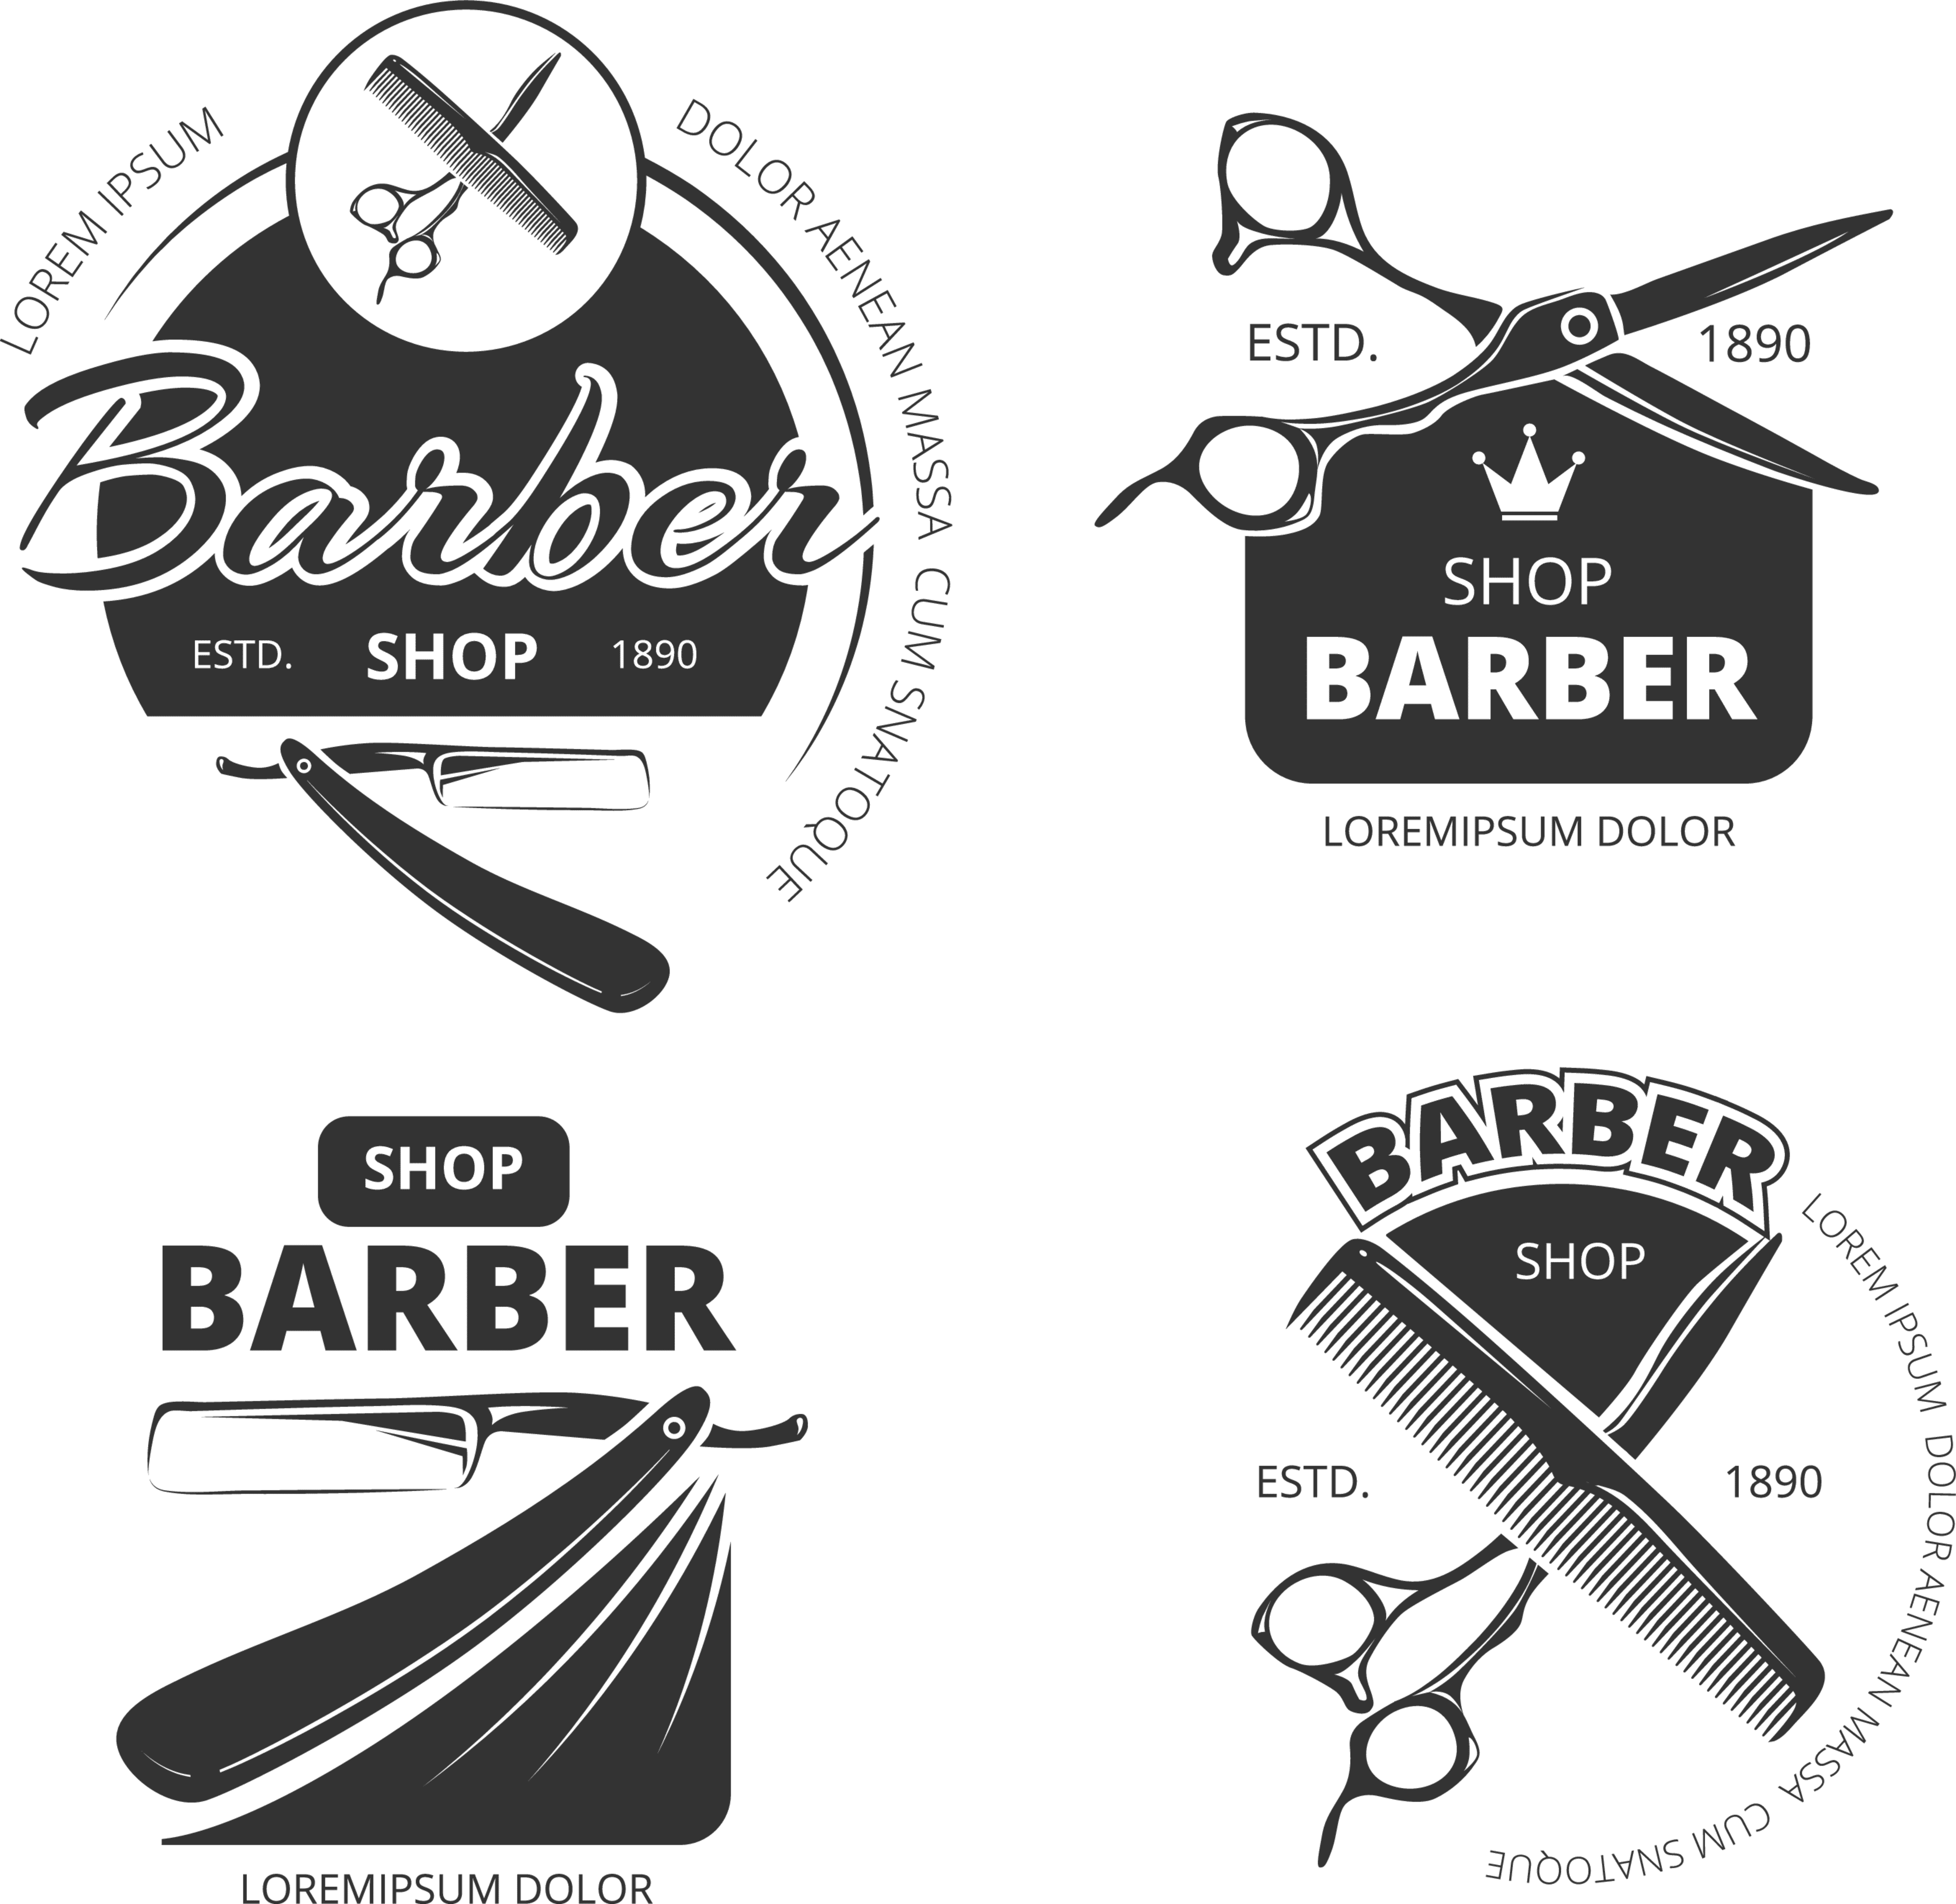 Barber Shop White Transparent, Barber Shop Icon Pictures, Barber